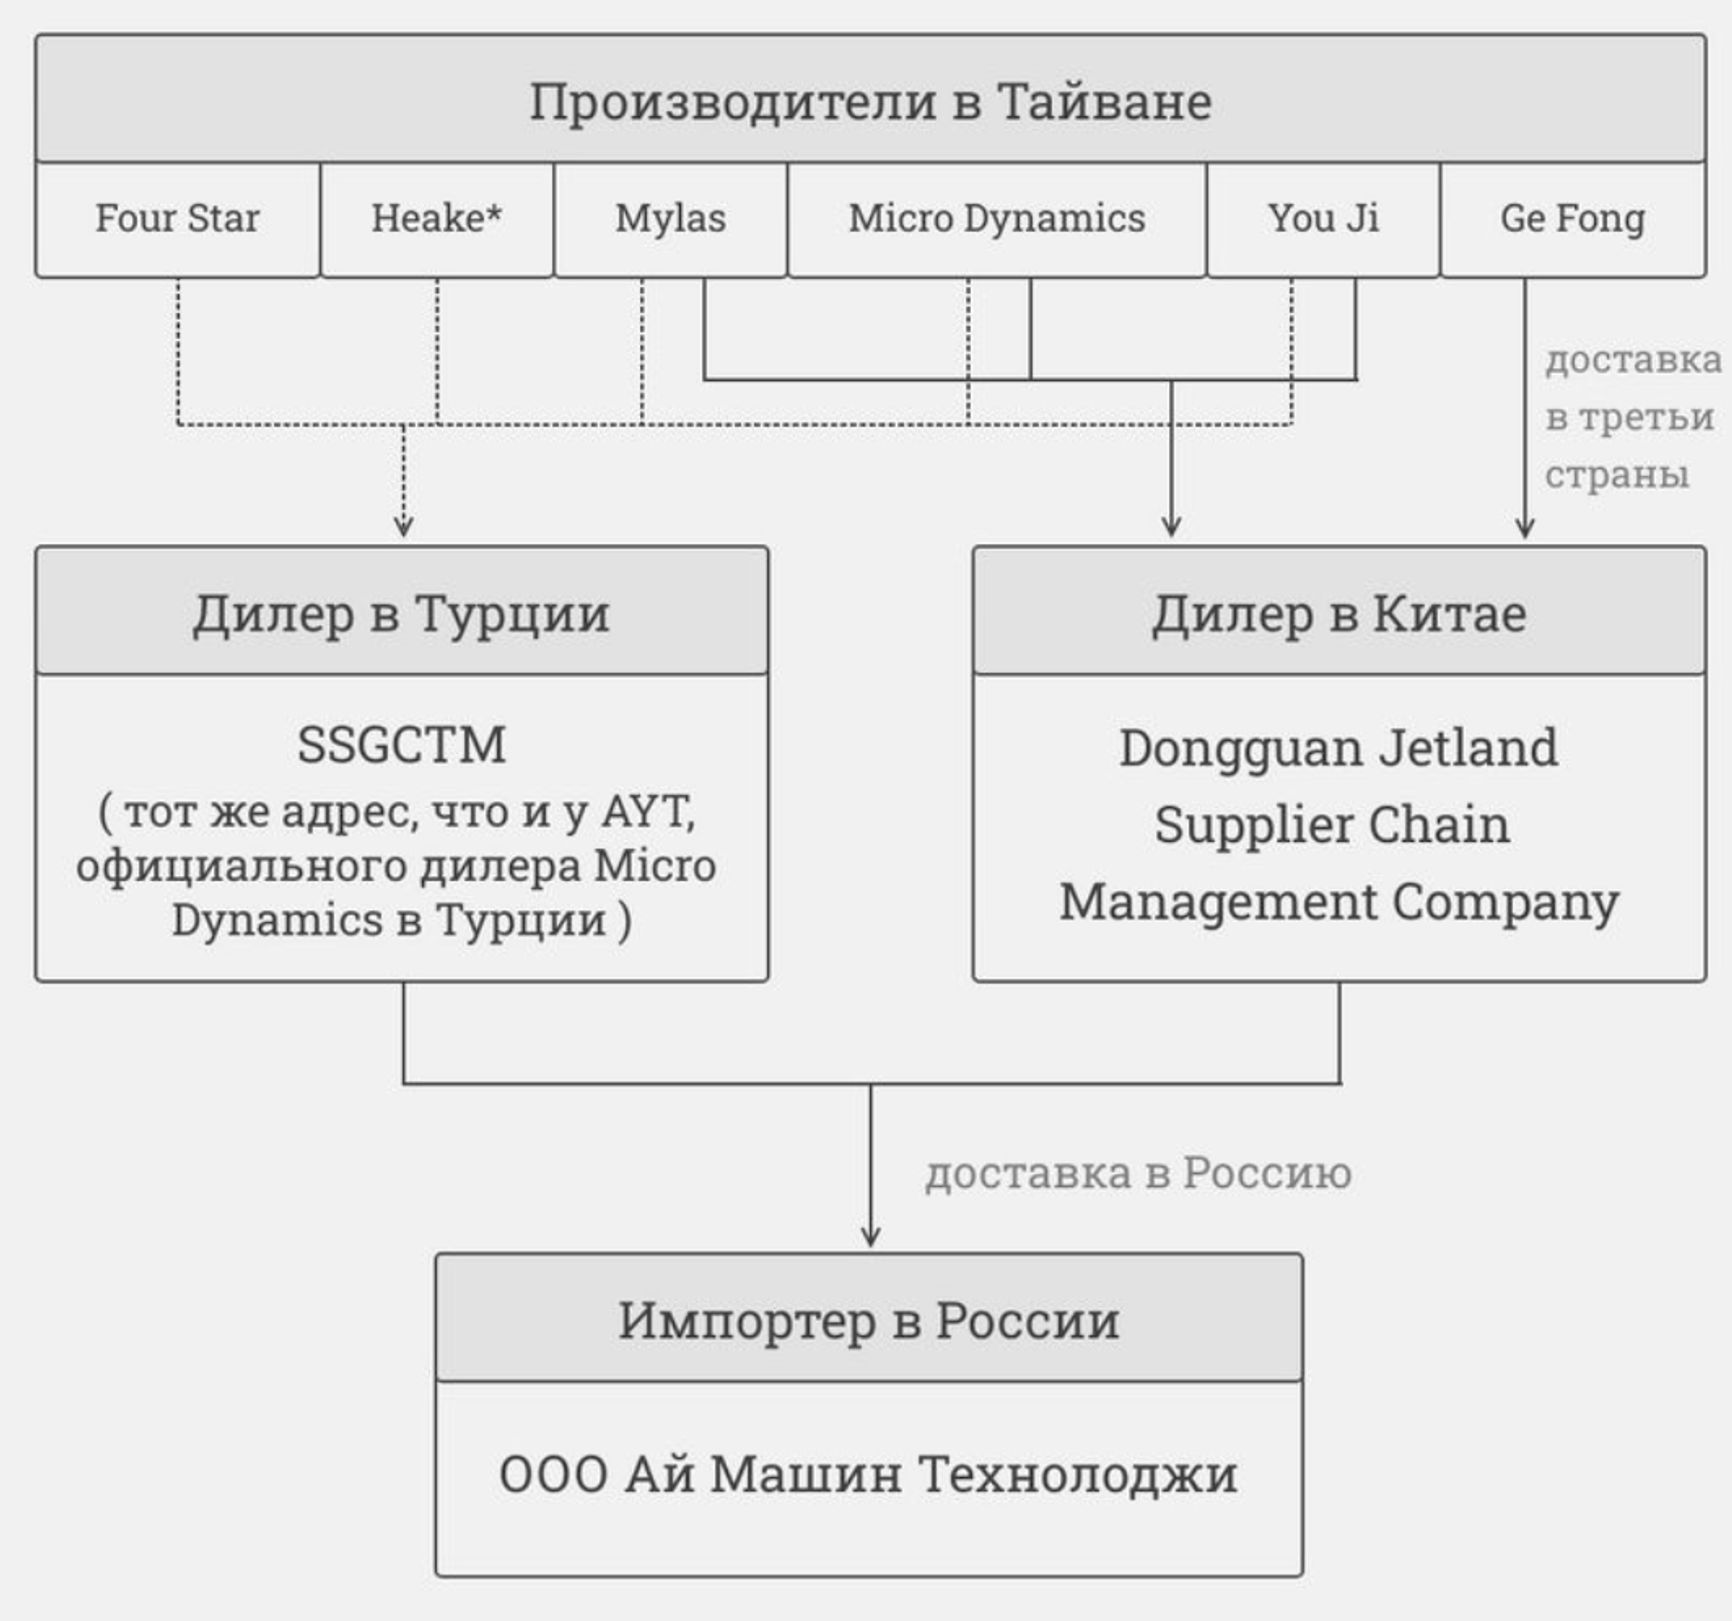 Импортная сеть I Machine в Россию через Турцию